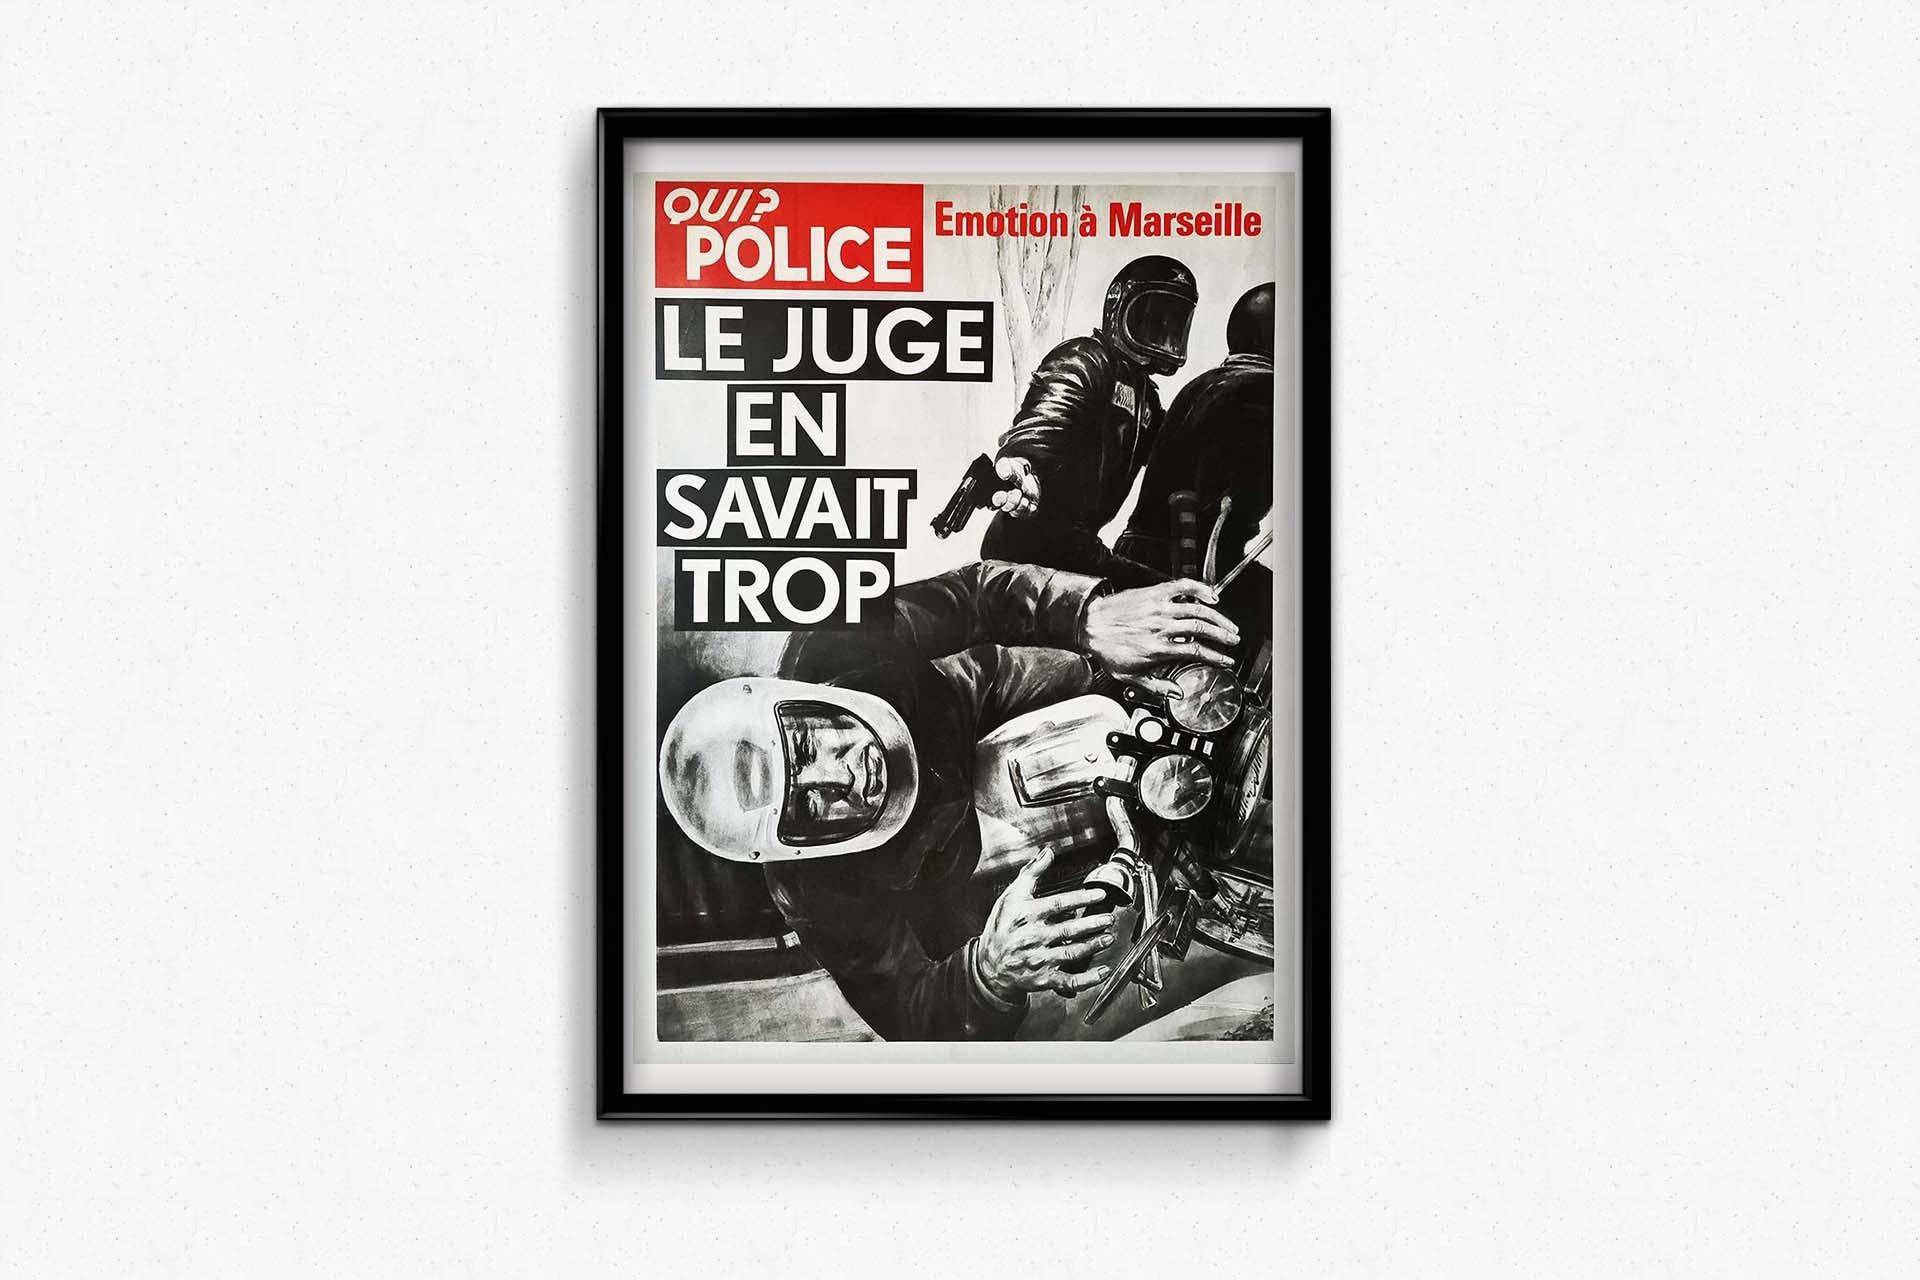 Original poster Qui ? Police Le Juge en savait trop - Emotion à Marseille For Sale 2